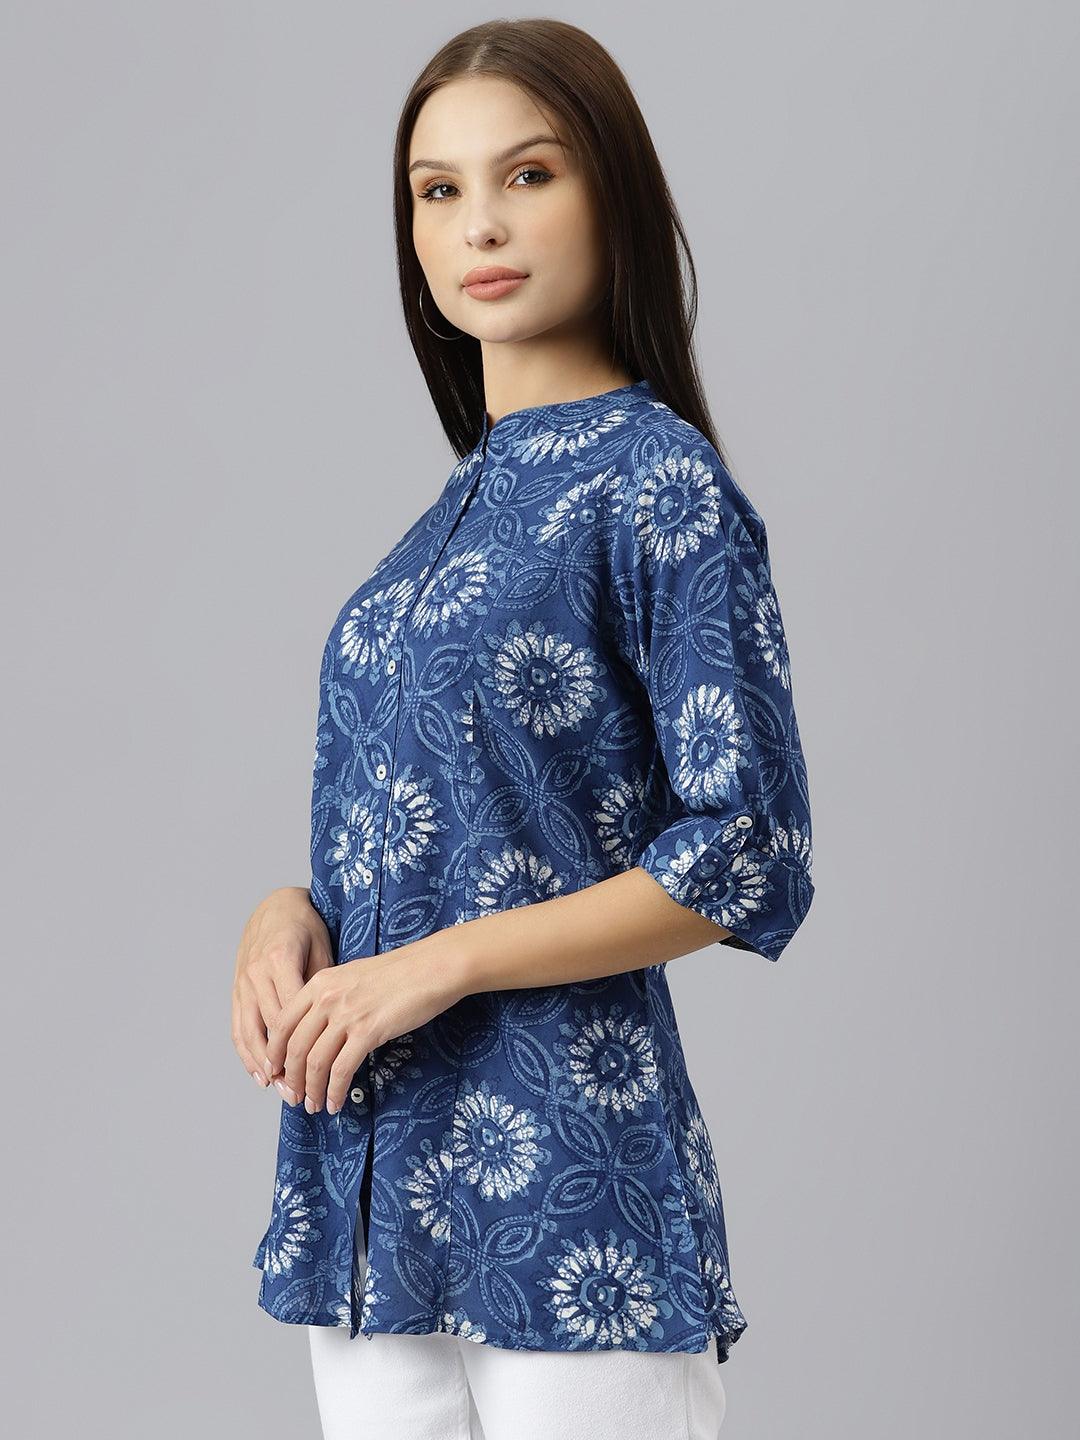 Divena Blue Floral Rayon A-line Shirts Style Top - divenaworld.com